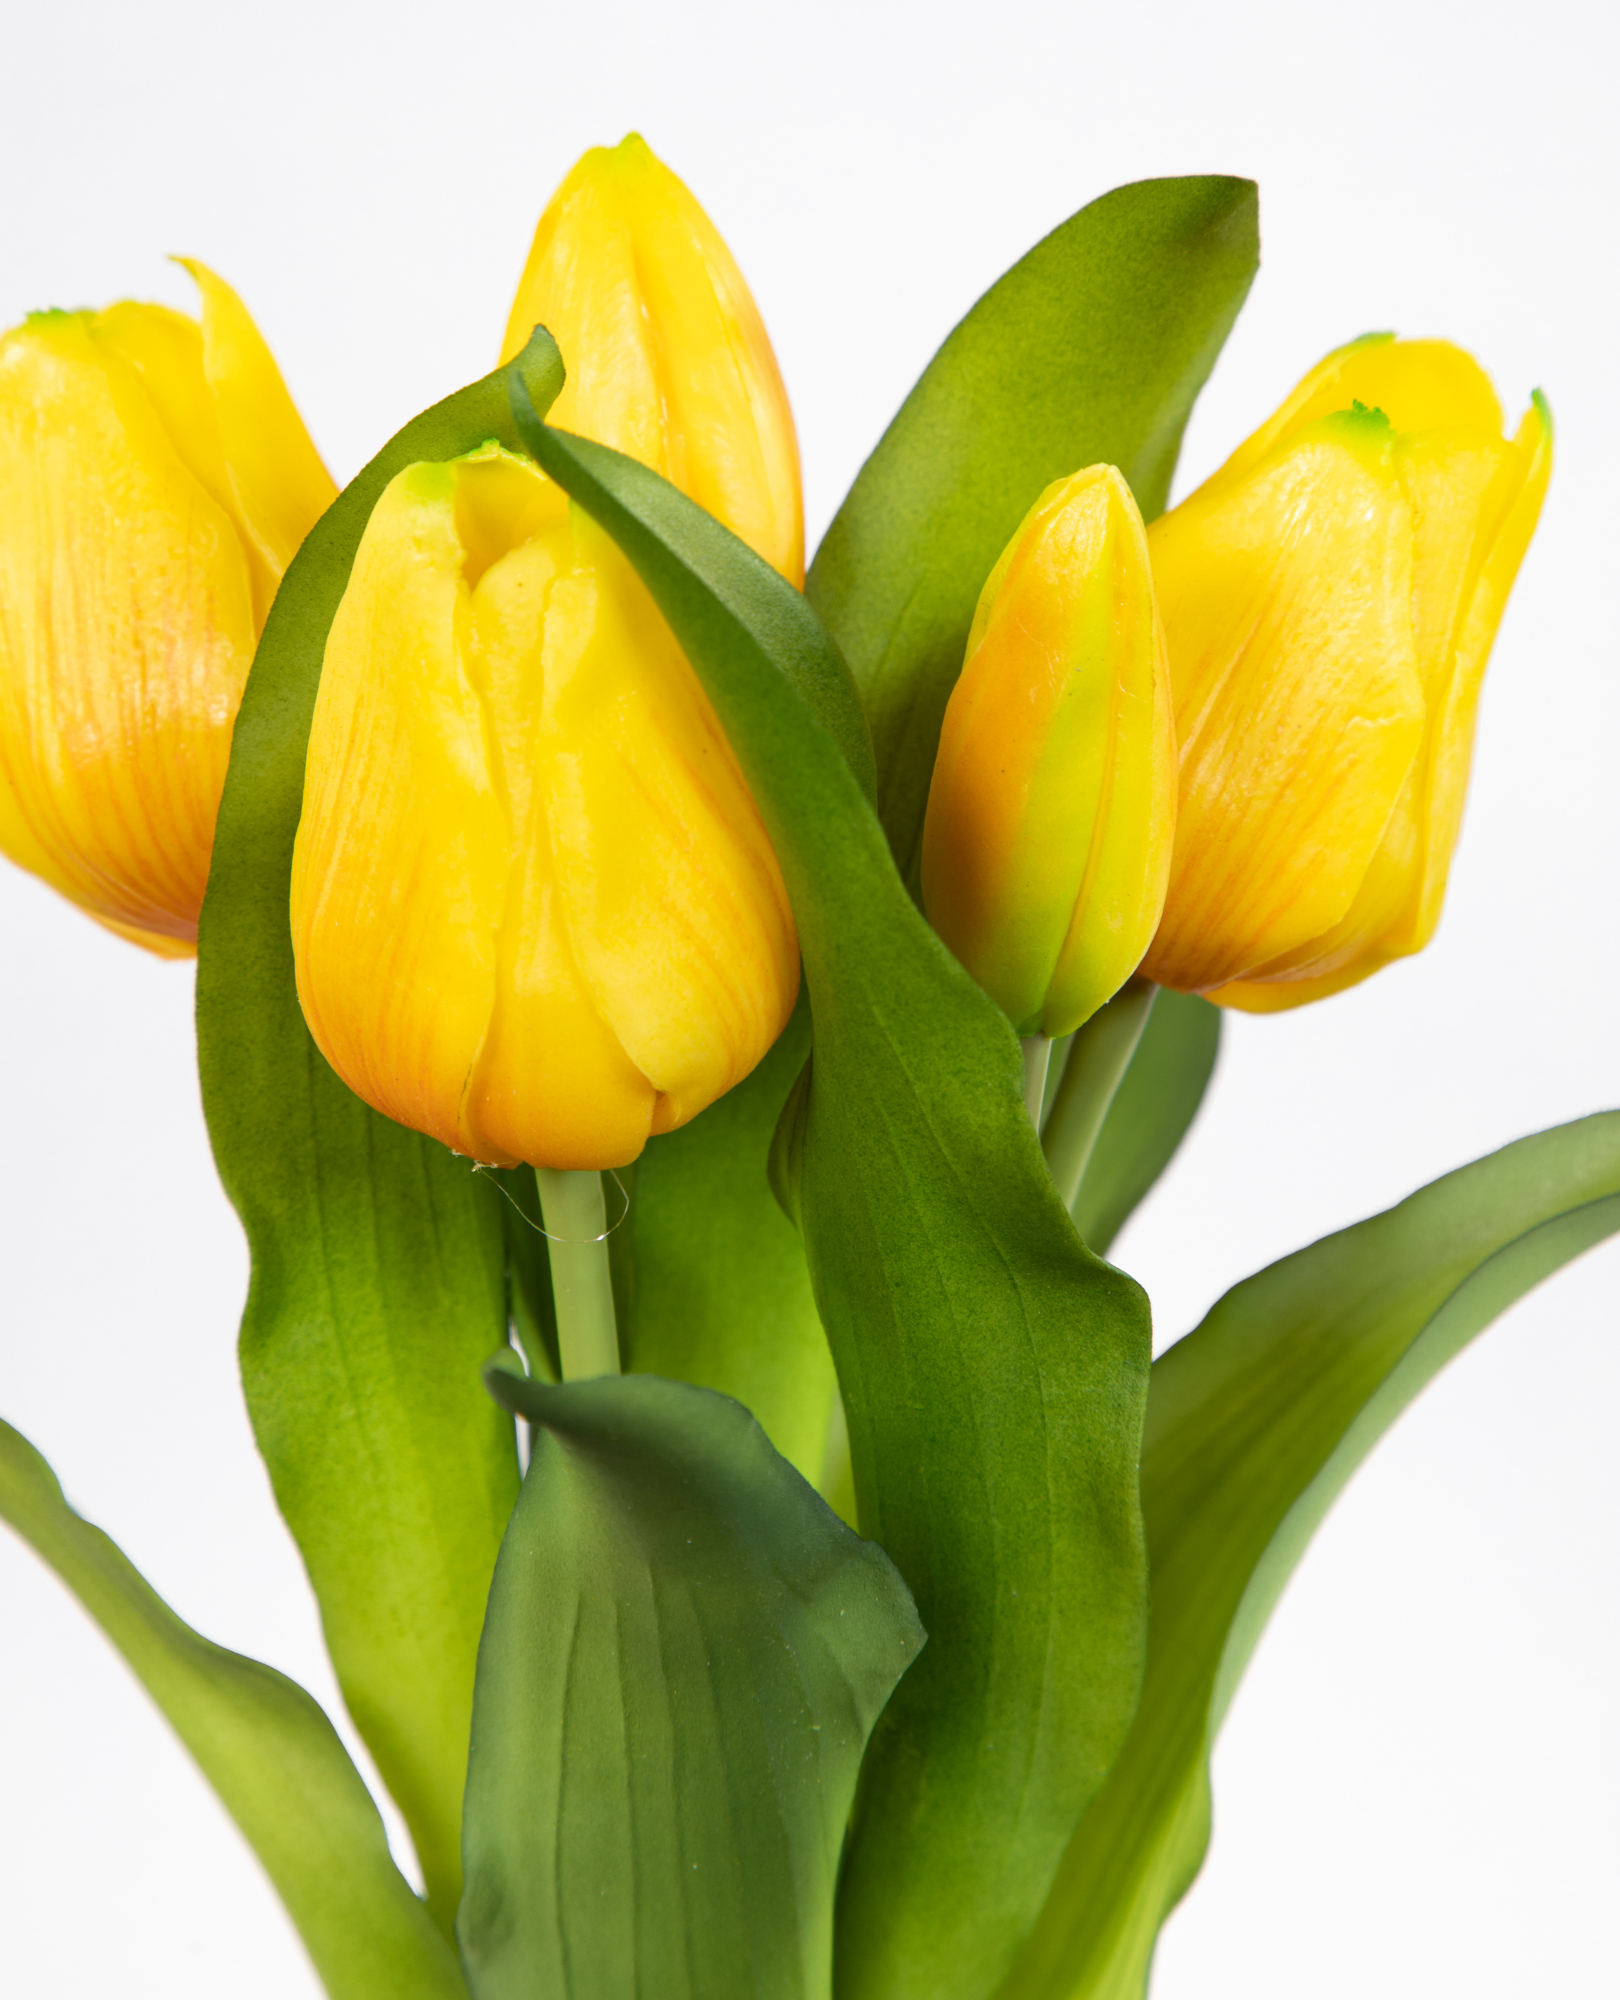 Touch DP künstliche 32x20cm mit Tulpen 5 Kunstblumen Latex Blüten Tulpenbund Blumen Real gelb Nature